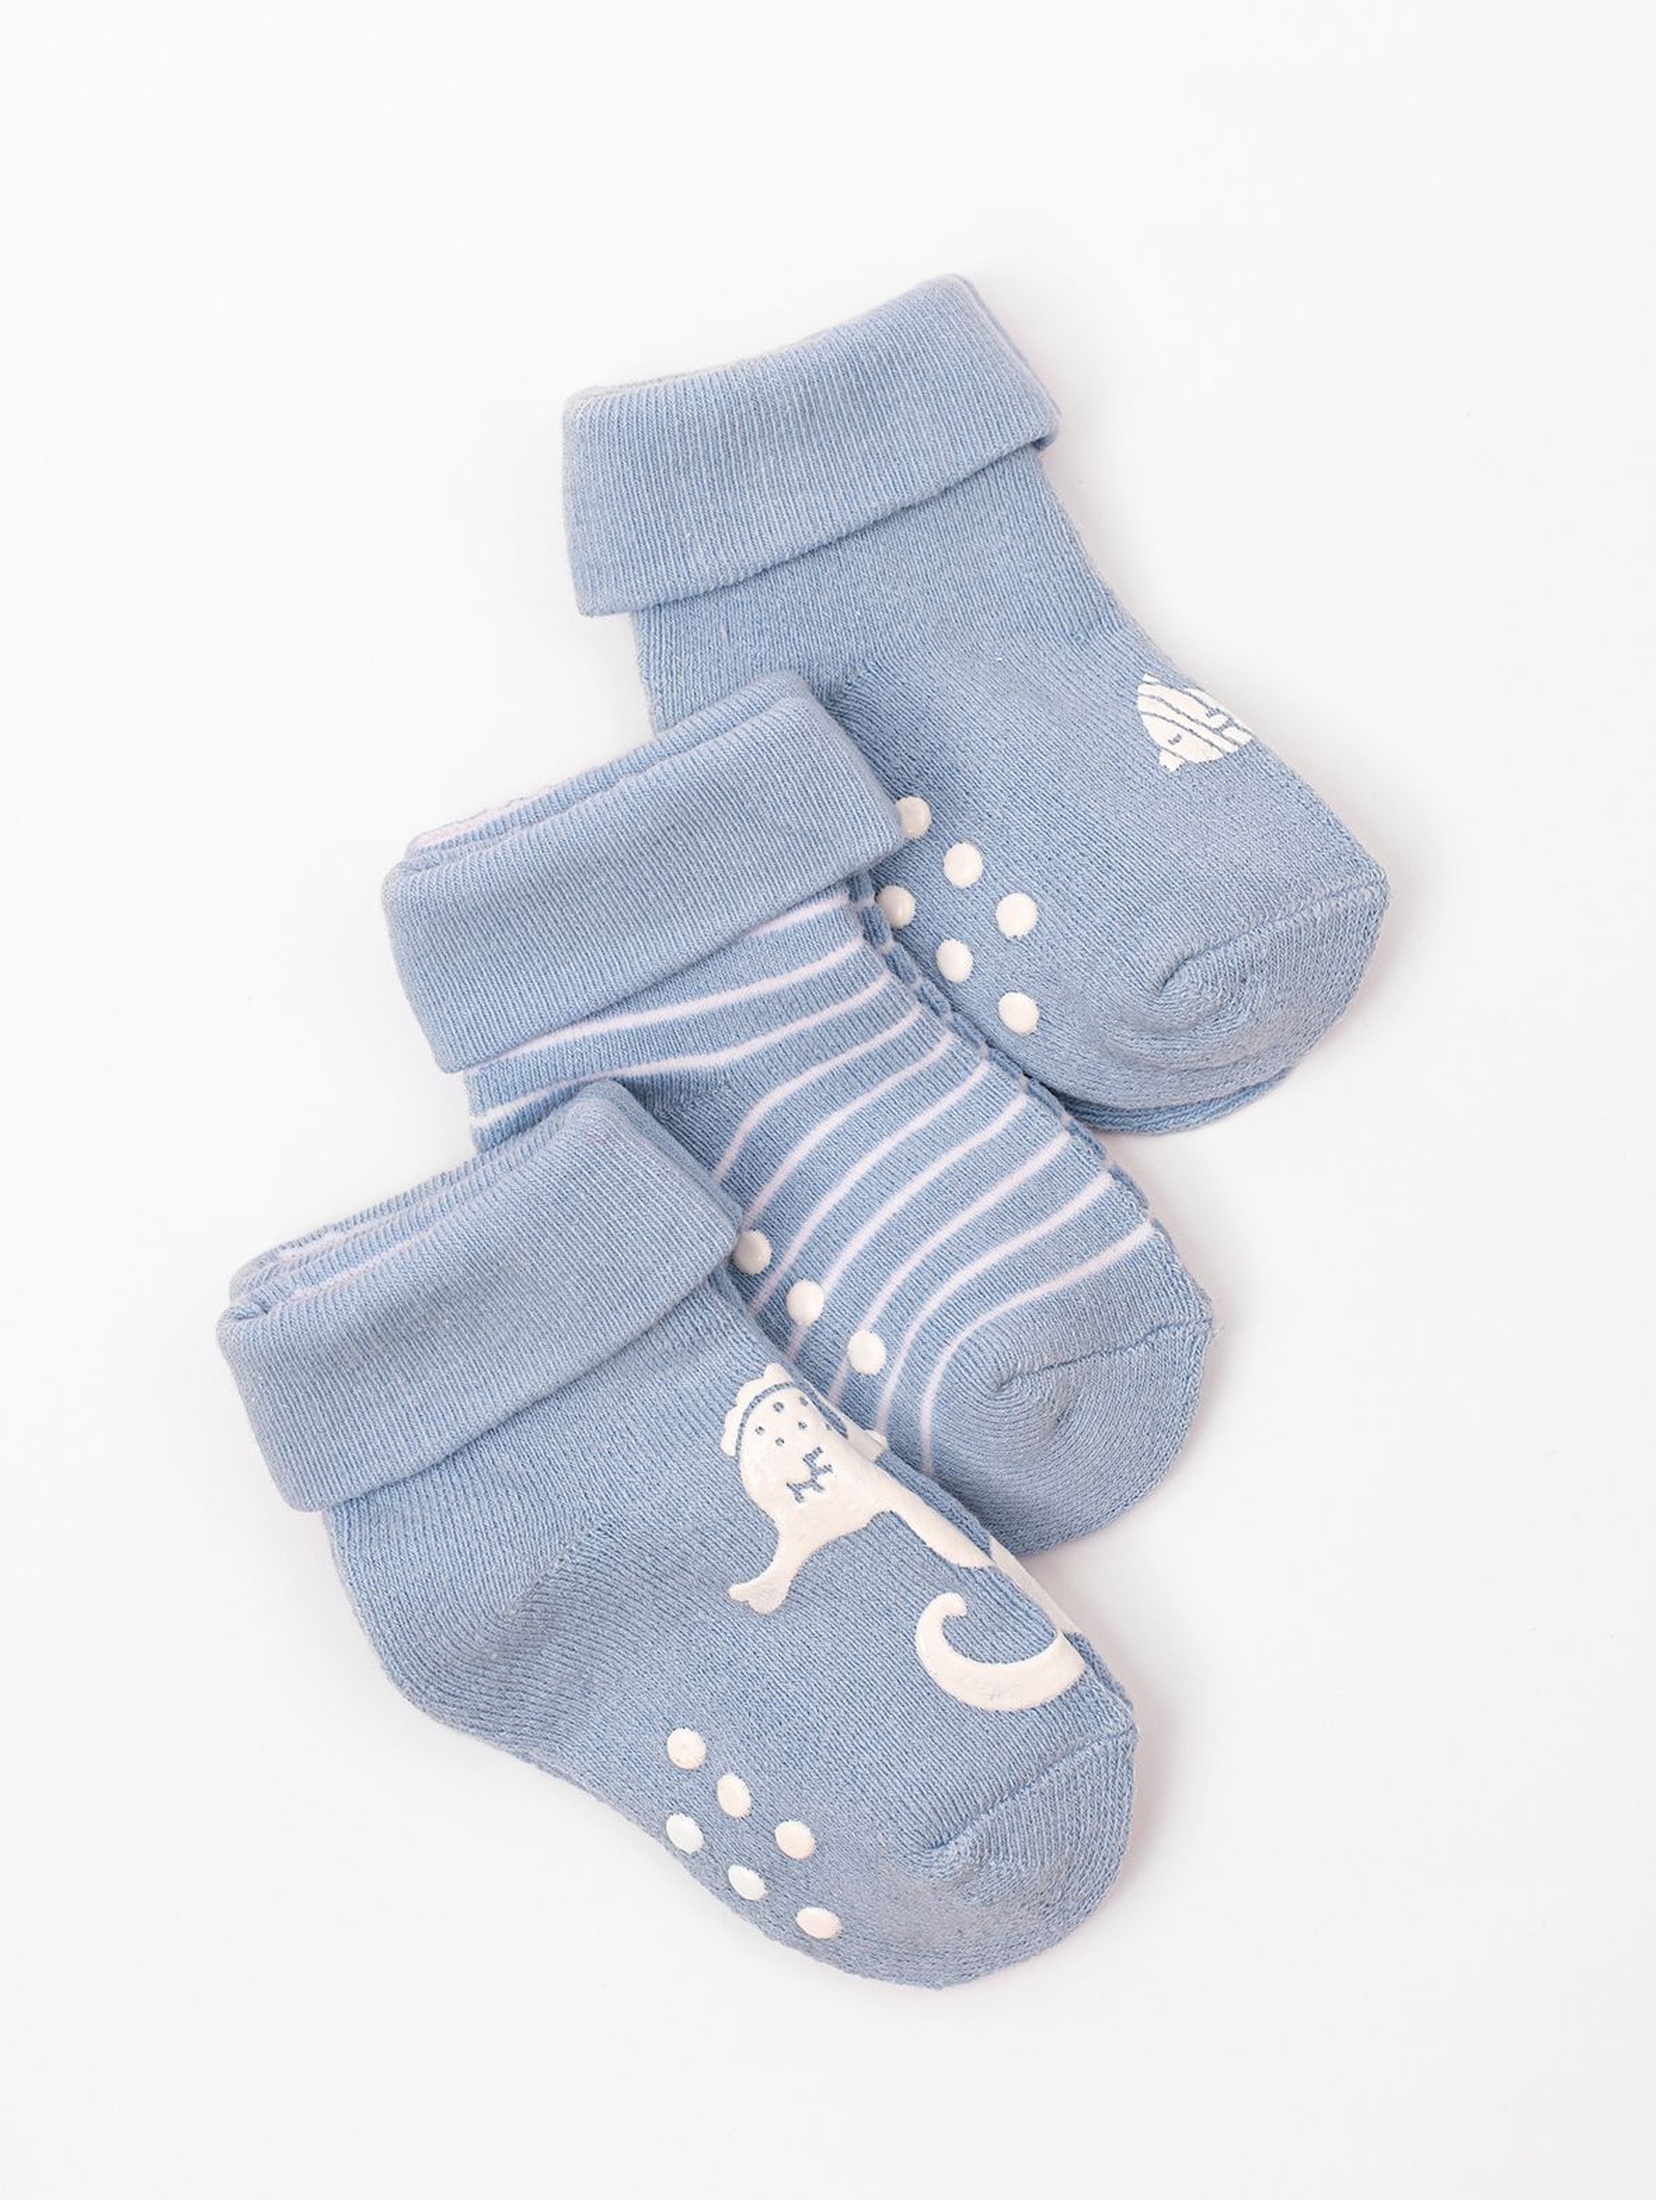 Skarpety niemowlęce antypoślizgowe 3pak niebieskie